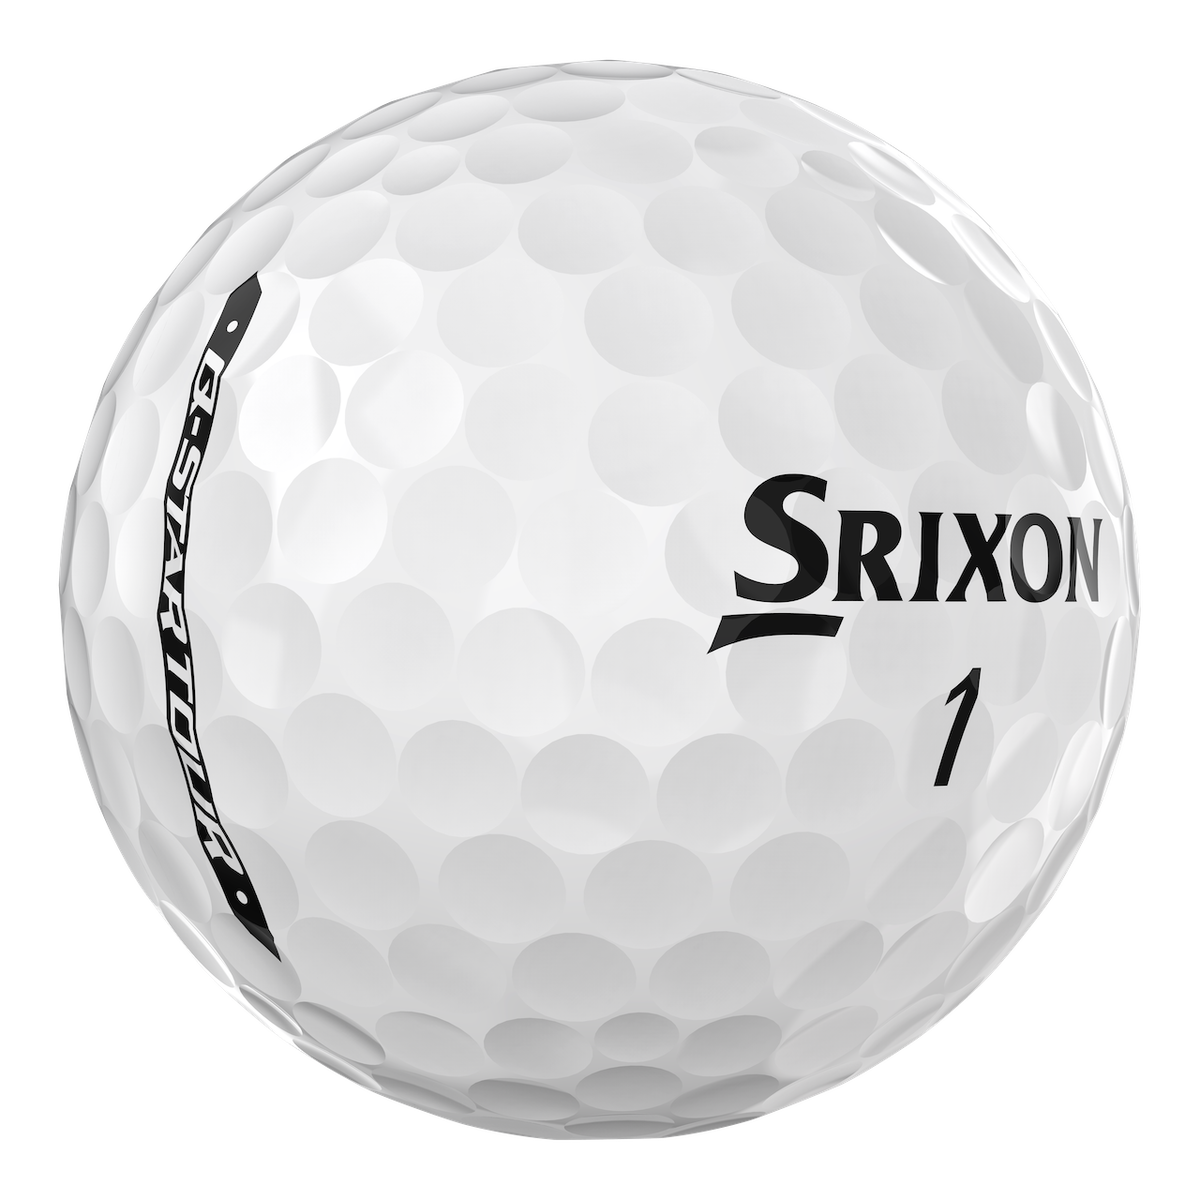 Srixon Q Star Tour golf ball